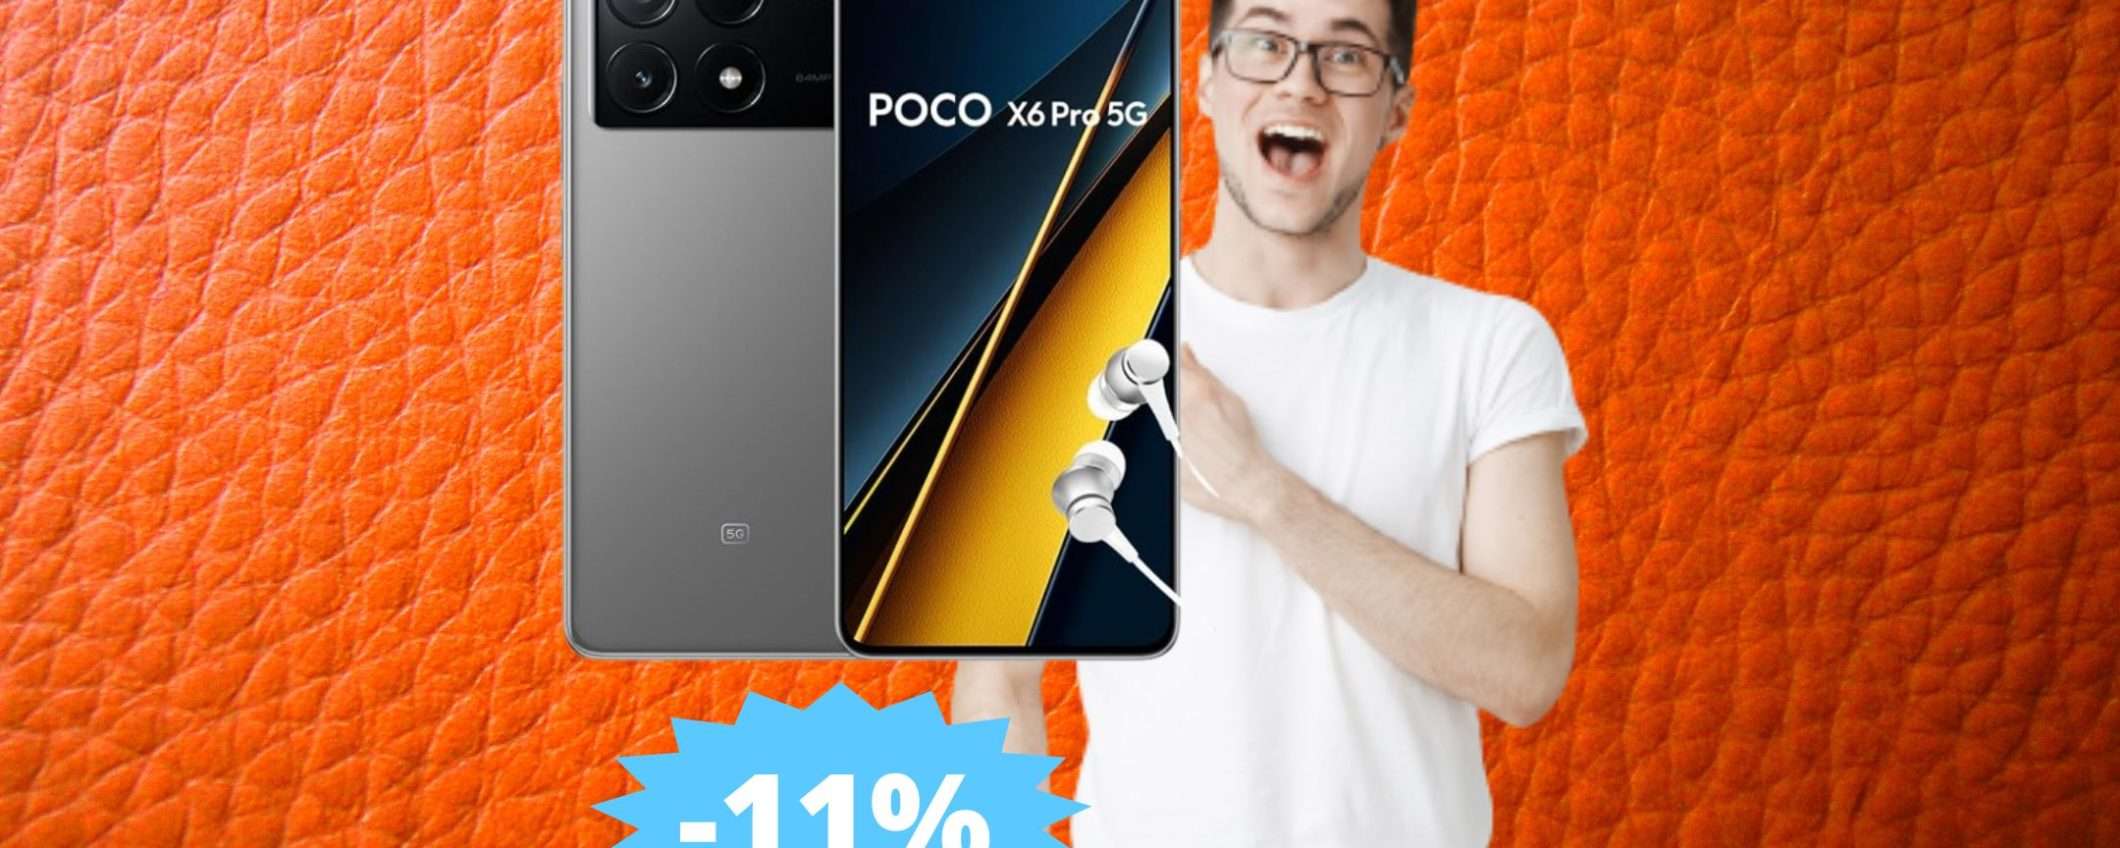 POCO X6 Pro: promozione speciale su Amazon (-11%)